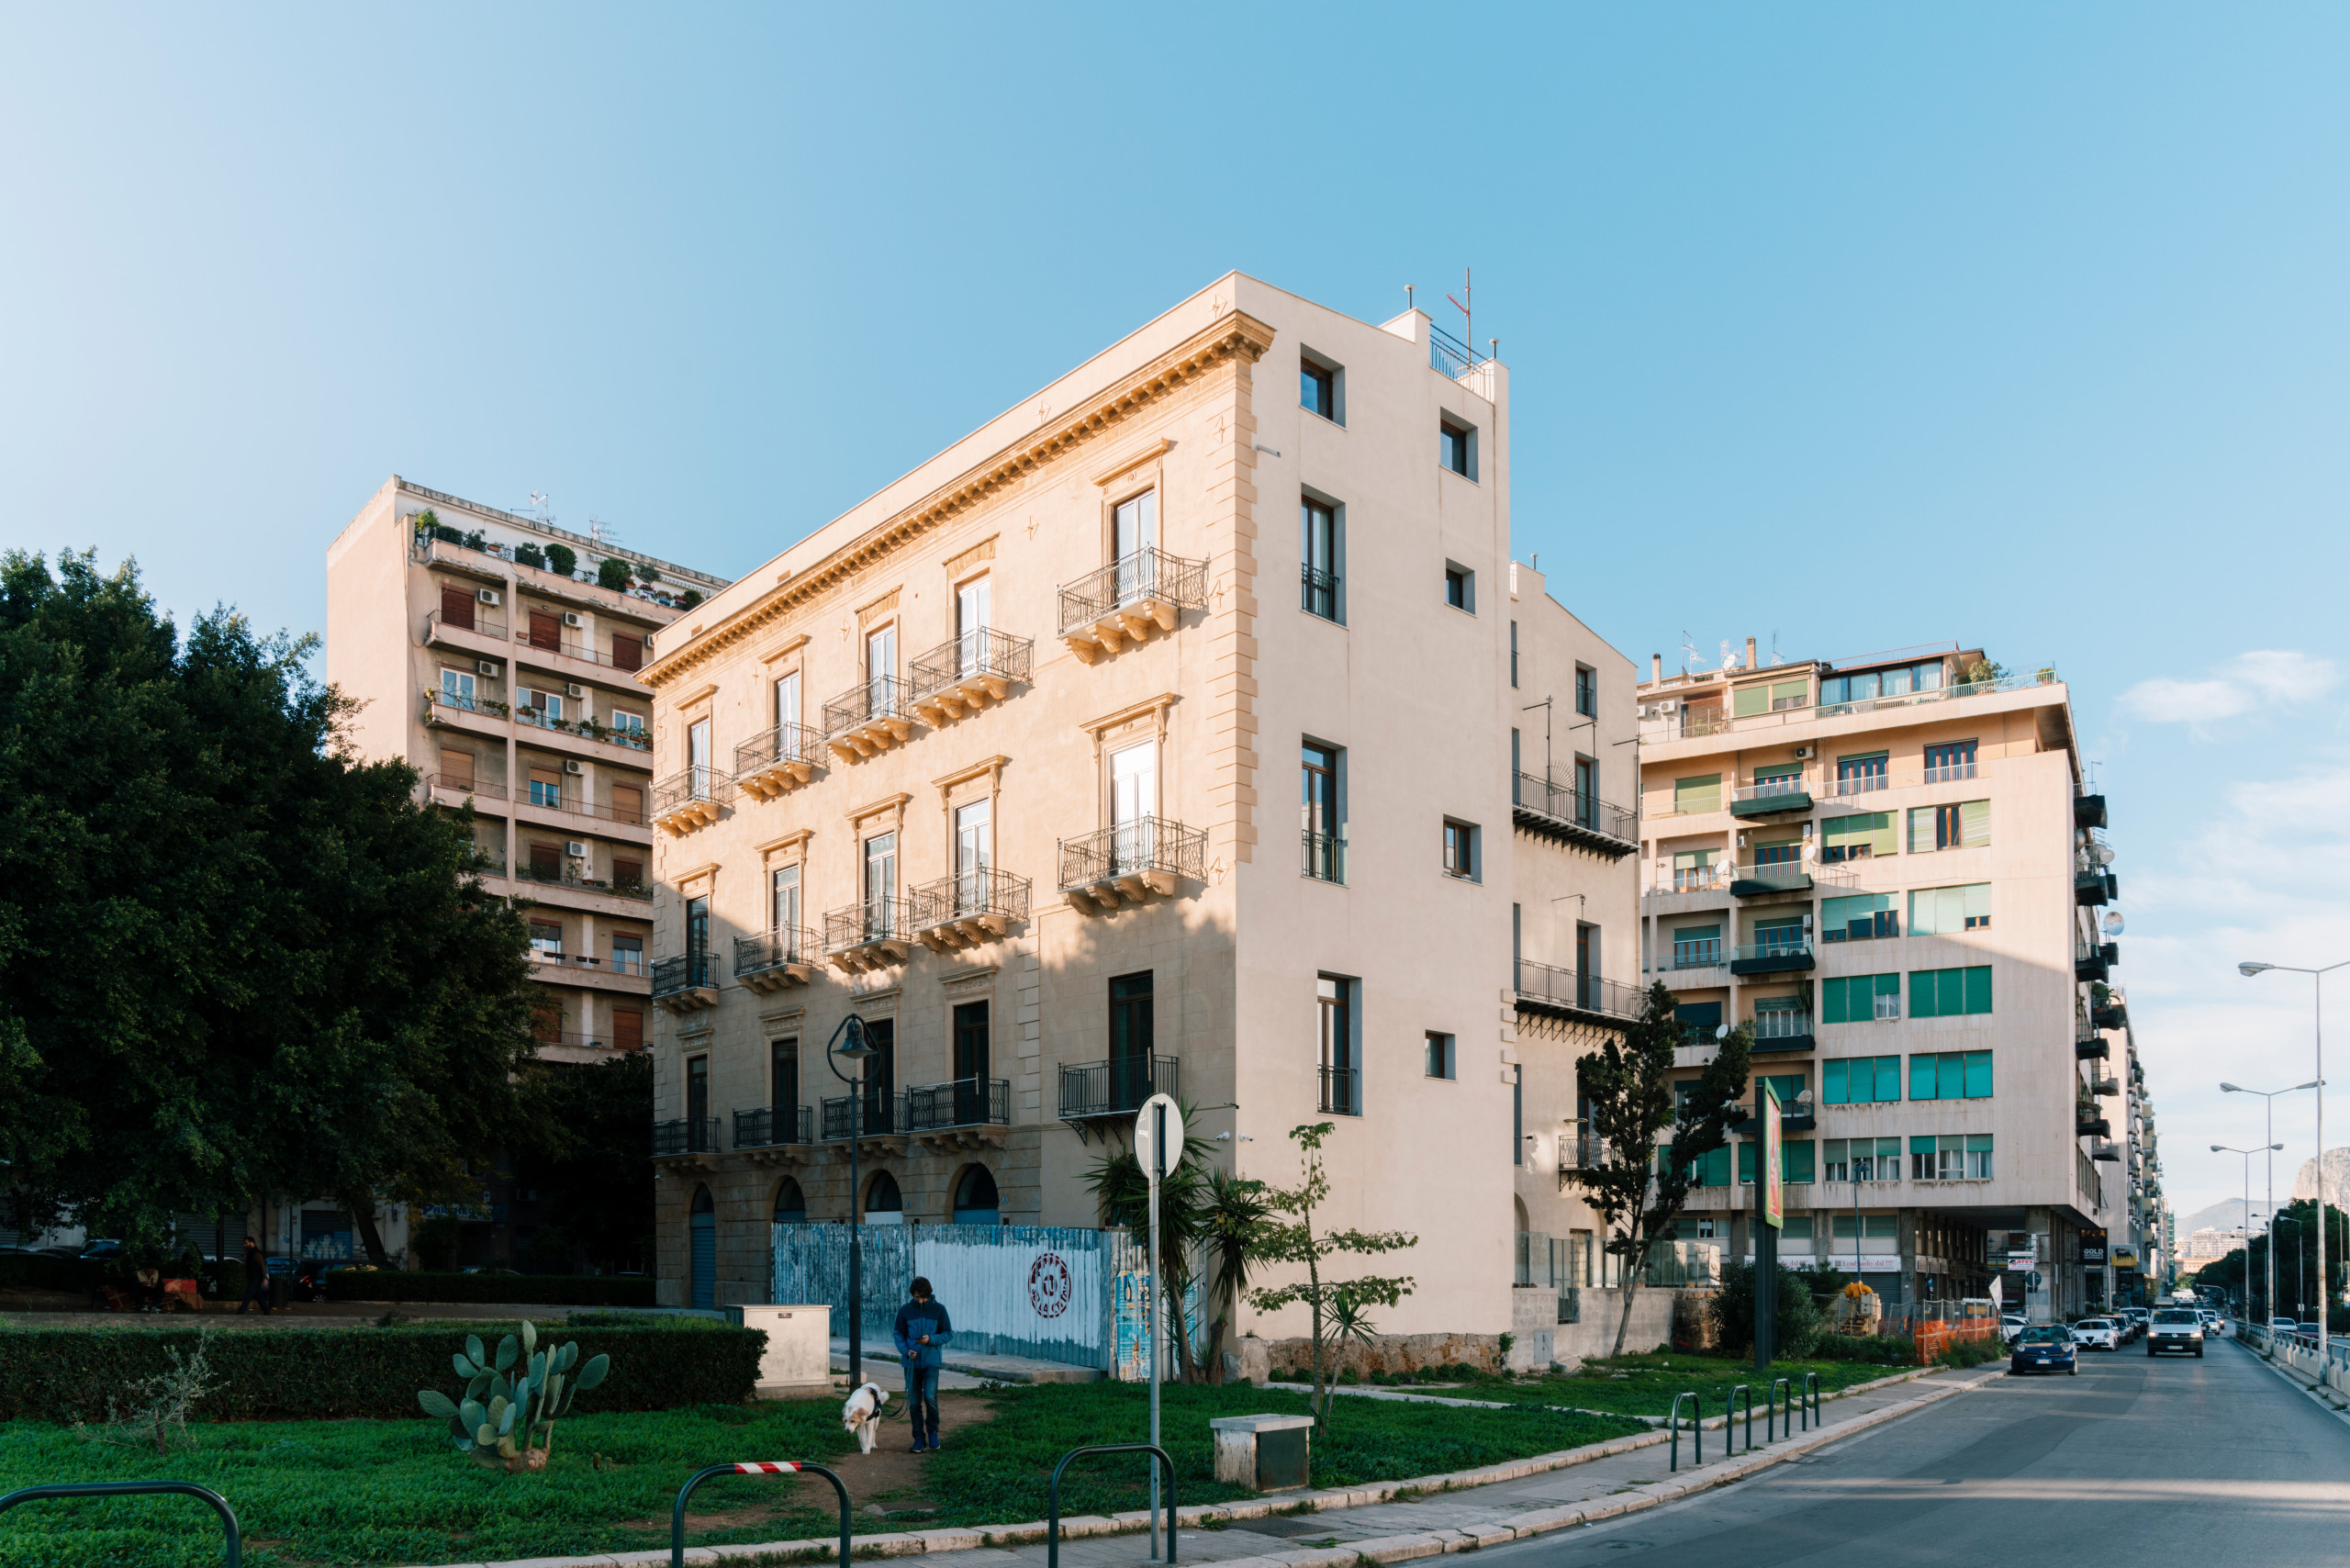 Intervento di riqualificazione edilizia a Piazza XIII Vittime, Palermo